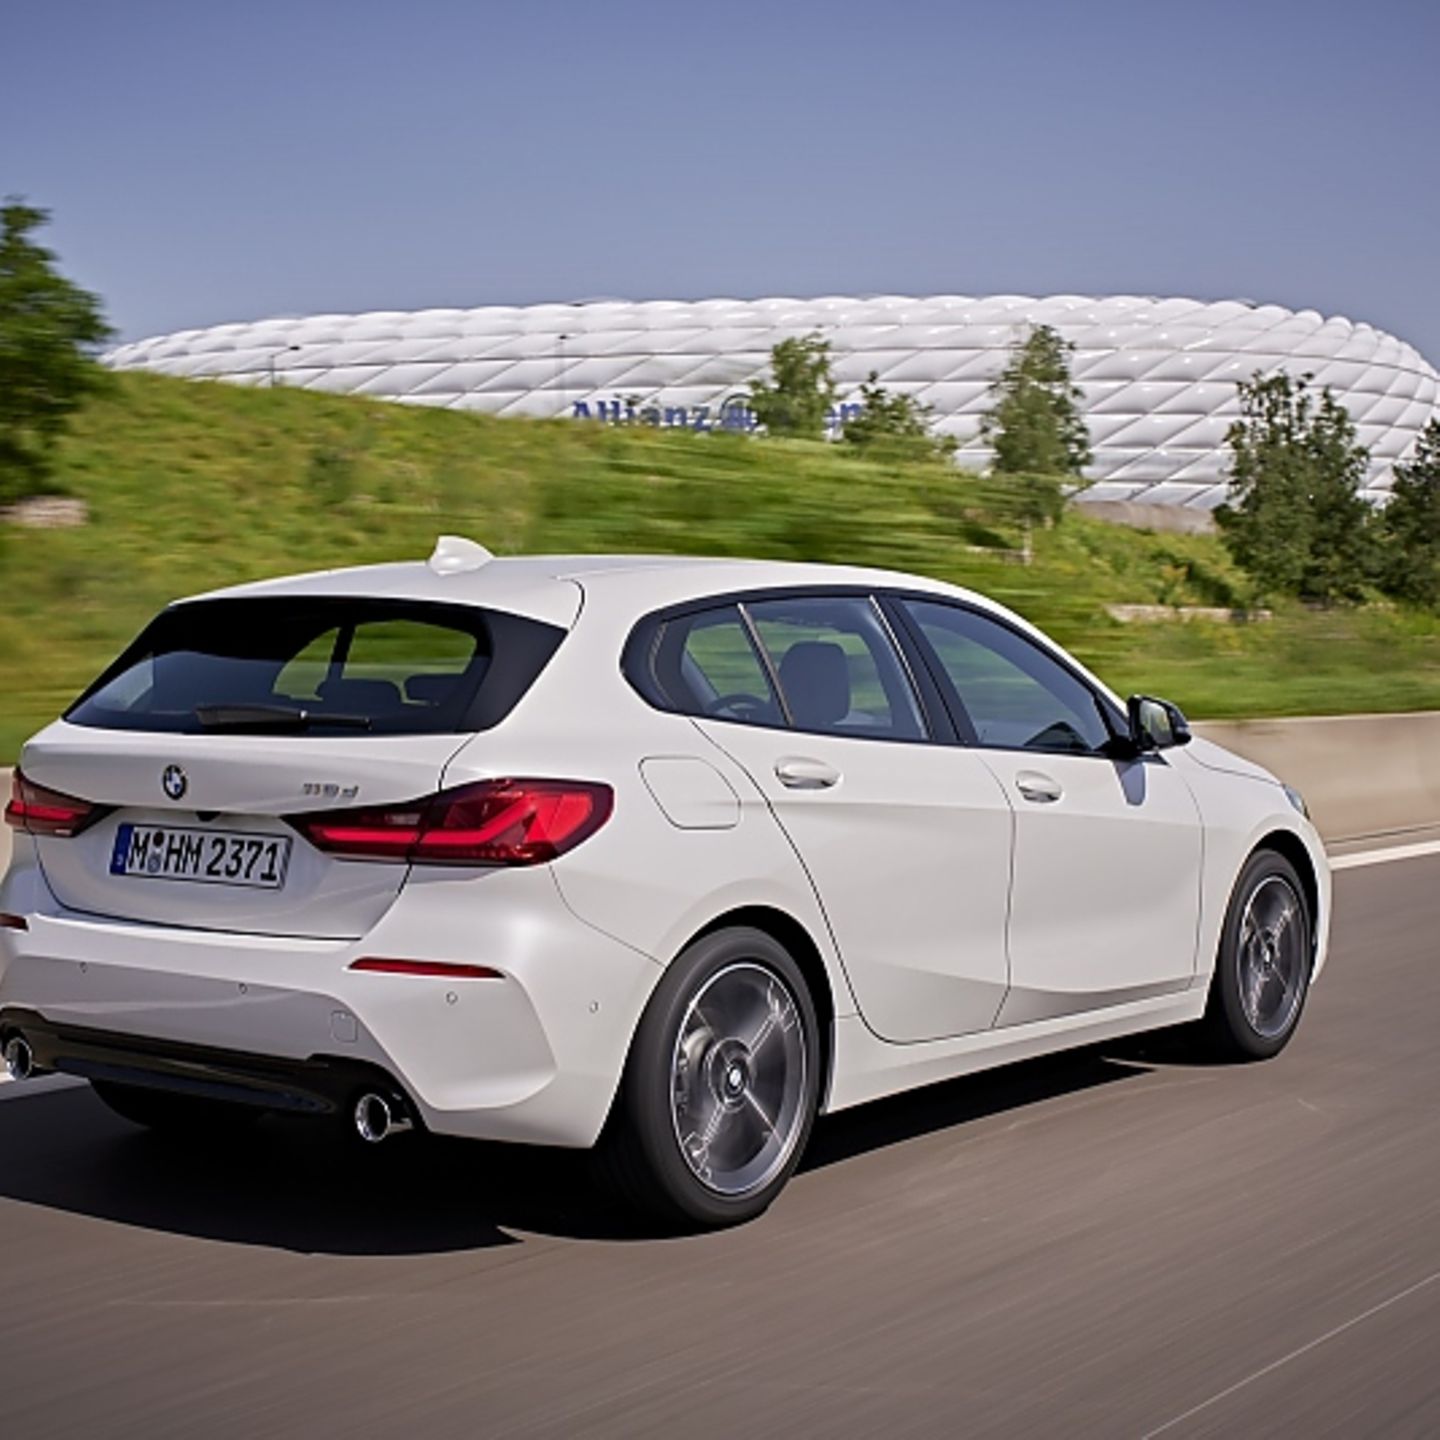 Neue BMW-Fahrerassistenzsysteme: Mein Auto kann schon parken - DER